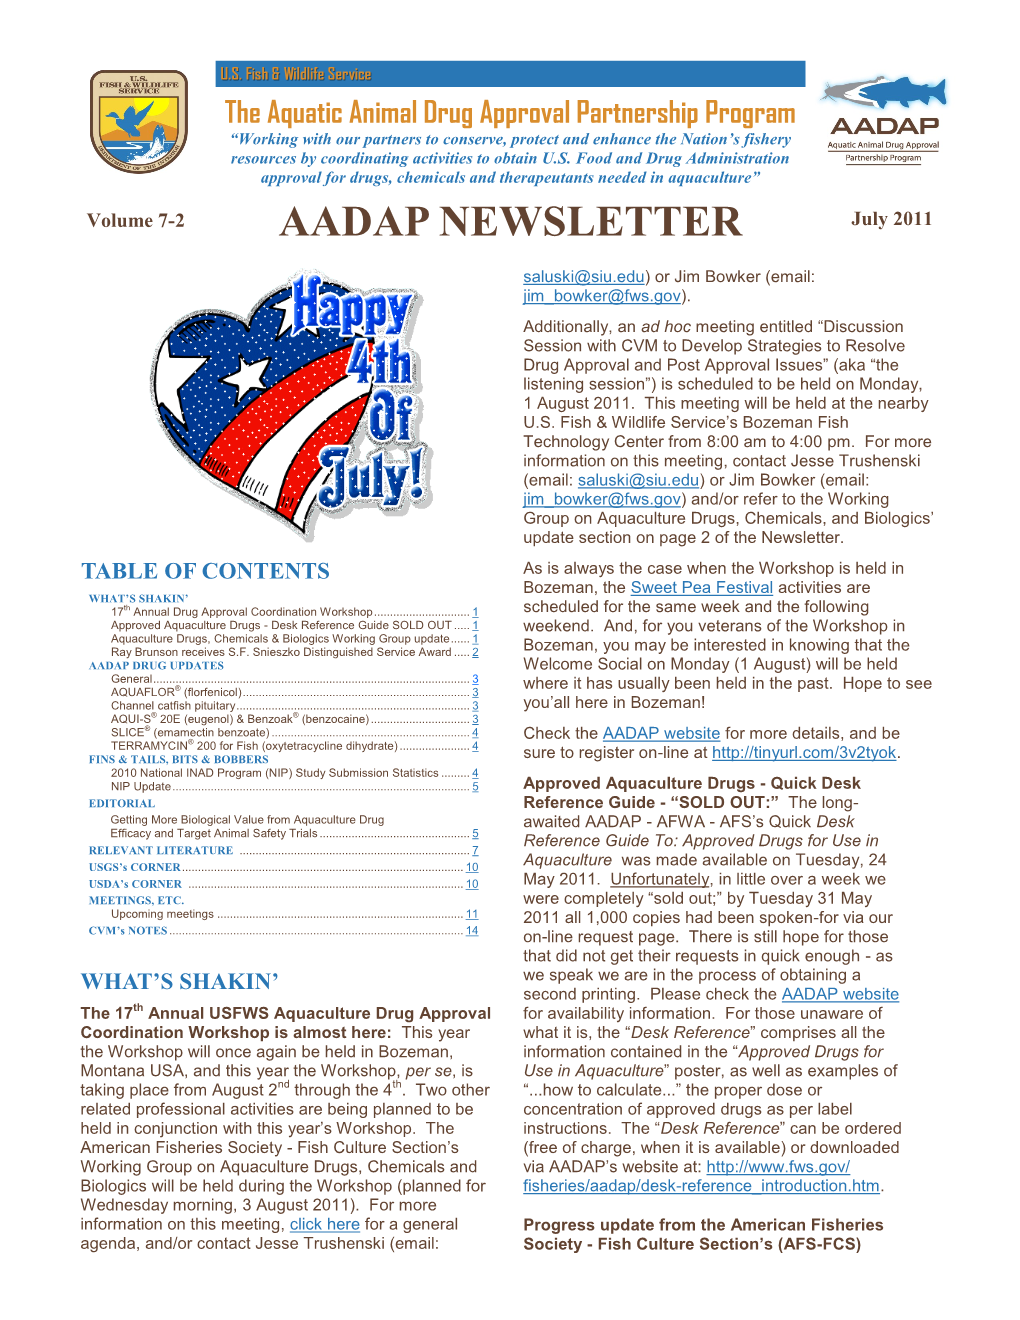 AADAP NEWSLETTER July 2011